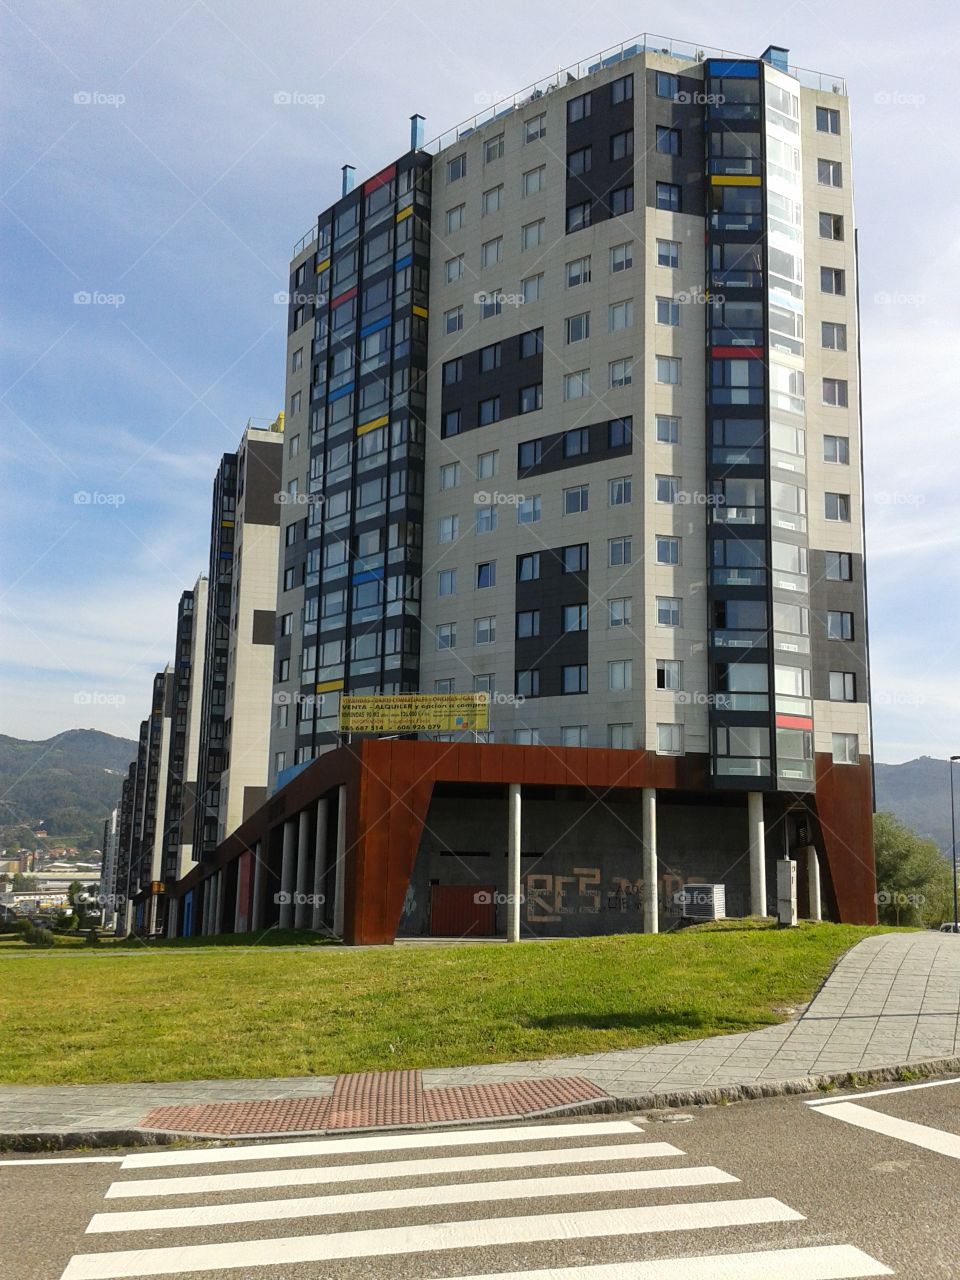 Buildings in Vigo